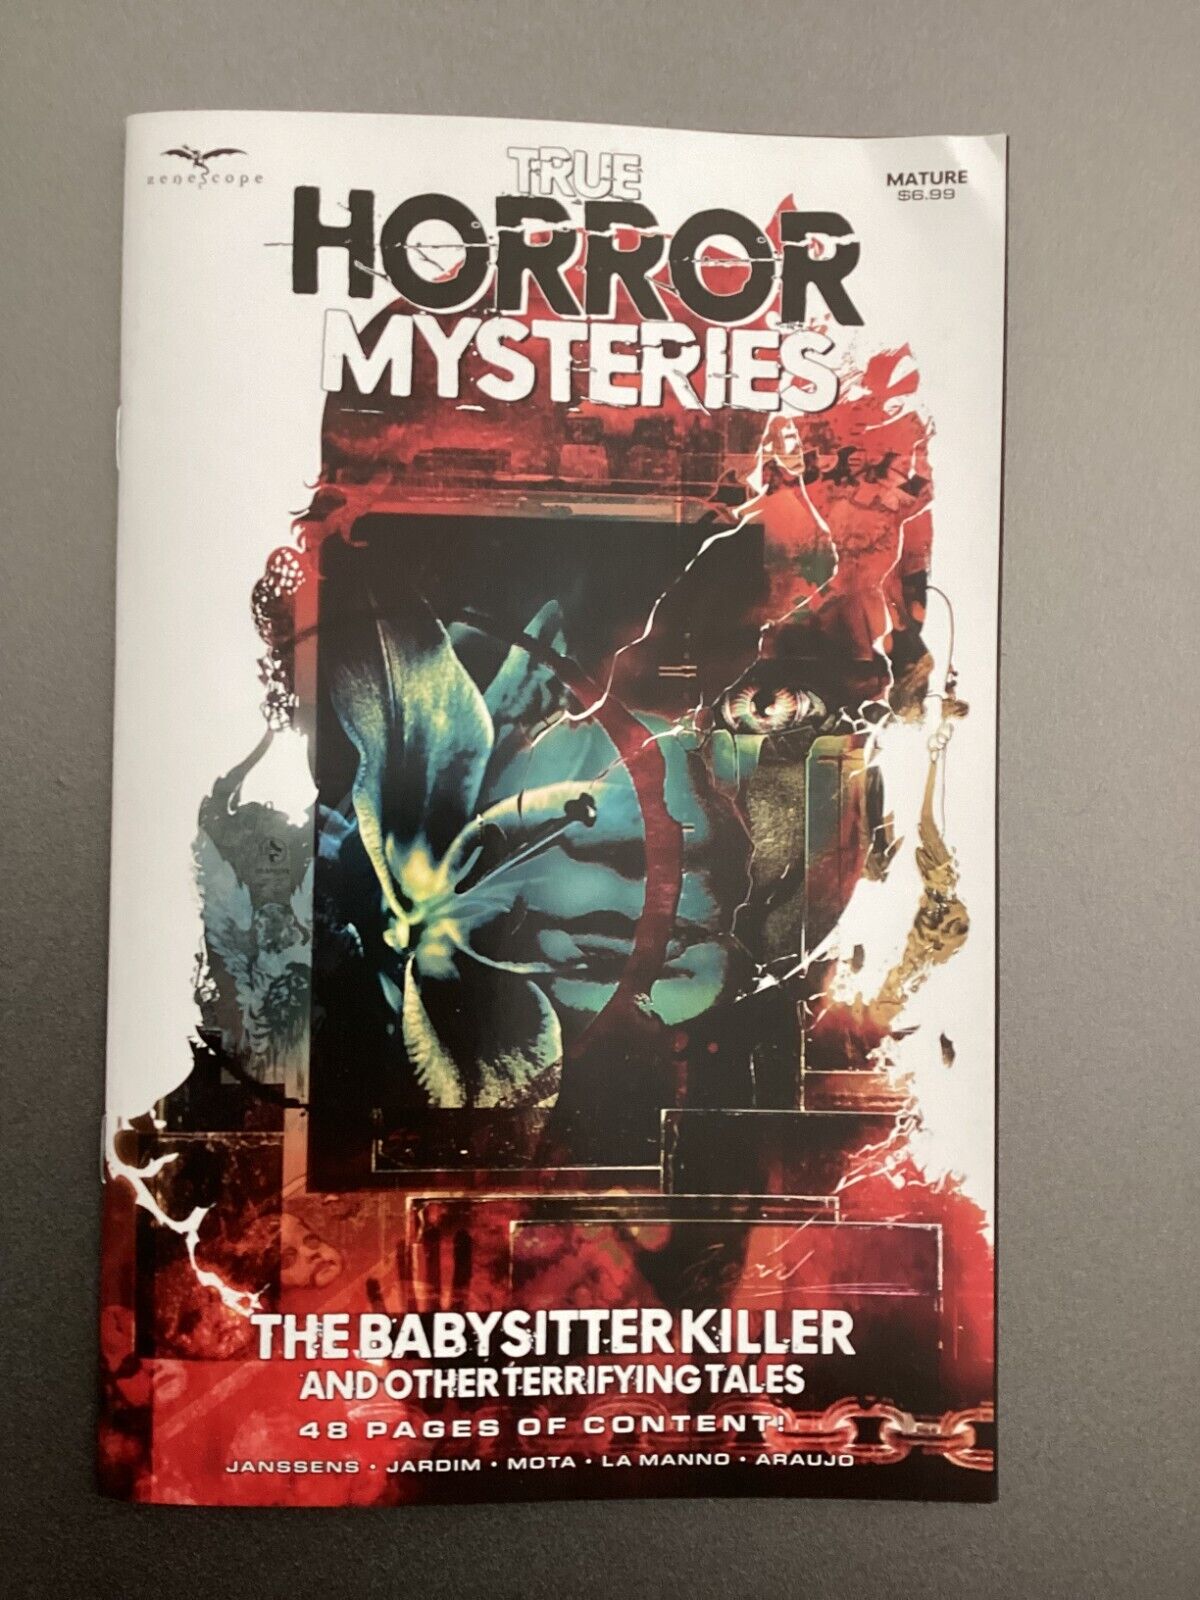 True Horror Mysteries: The Babysitter Killer & Other Terrifying Tales